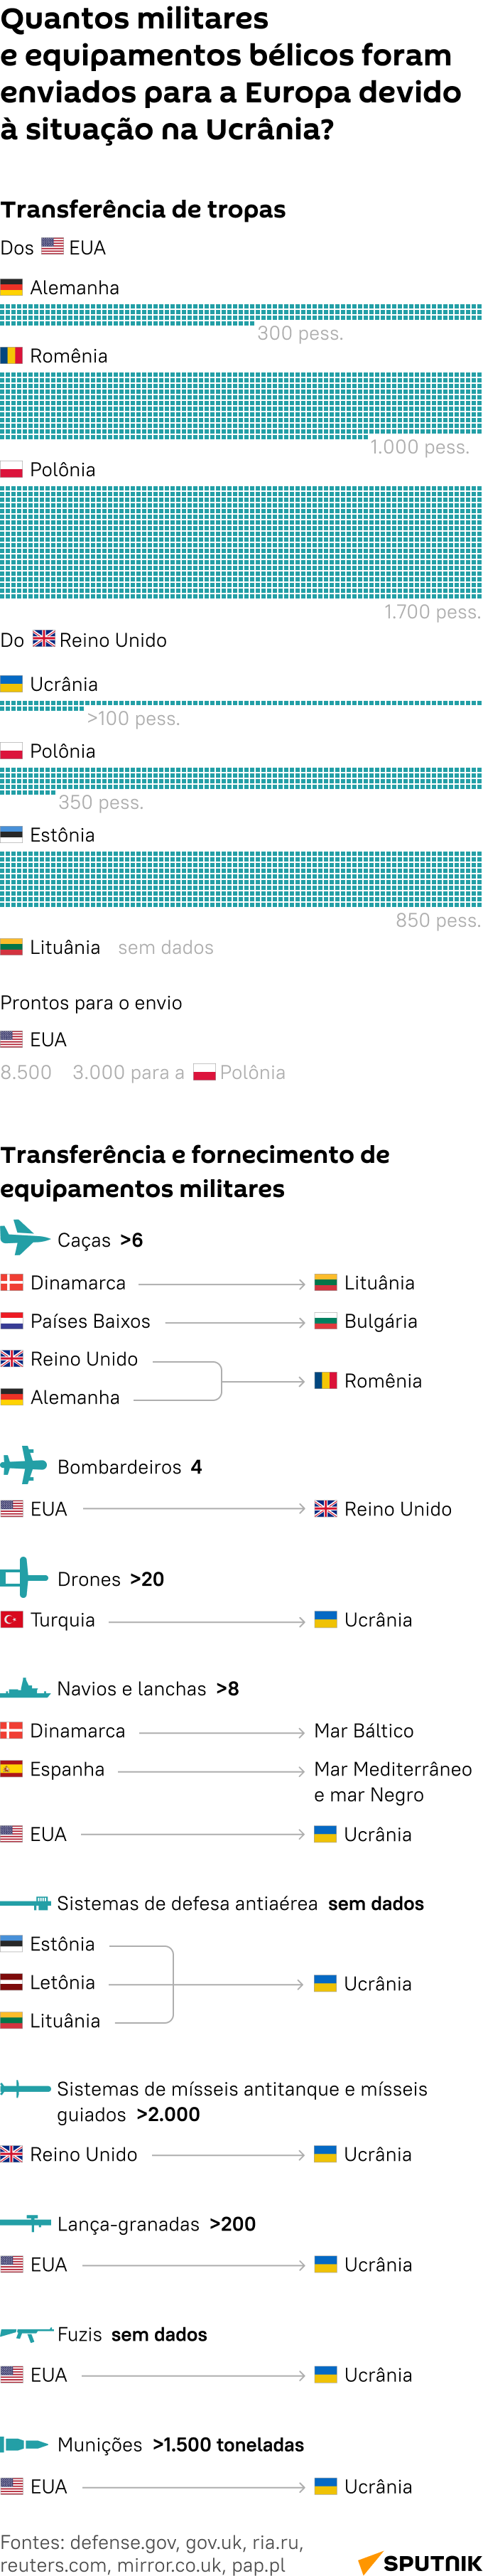 Quantos miliares e equipamento bélico EUA e aliados já transferiram para Europa?  - Sputnik Brasil